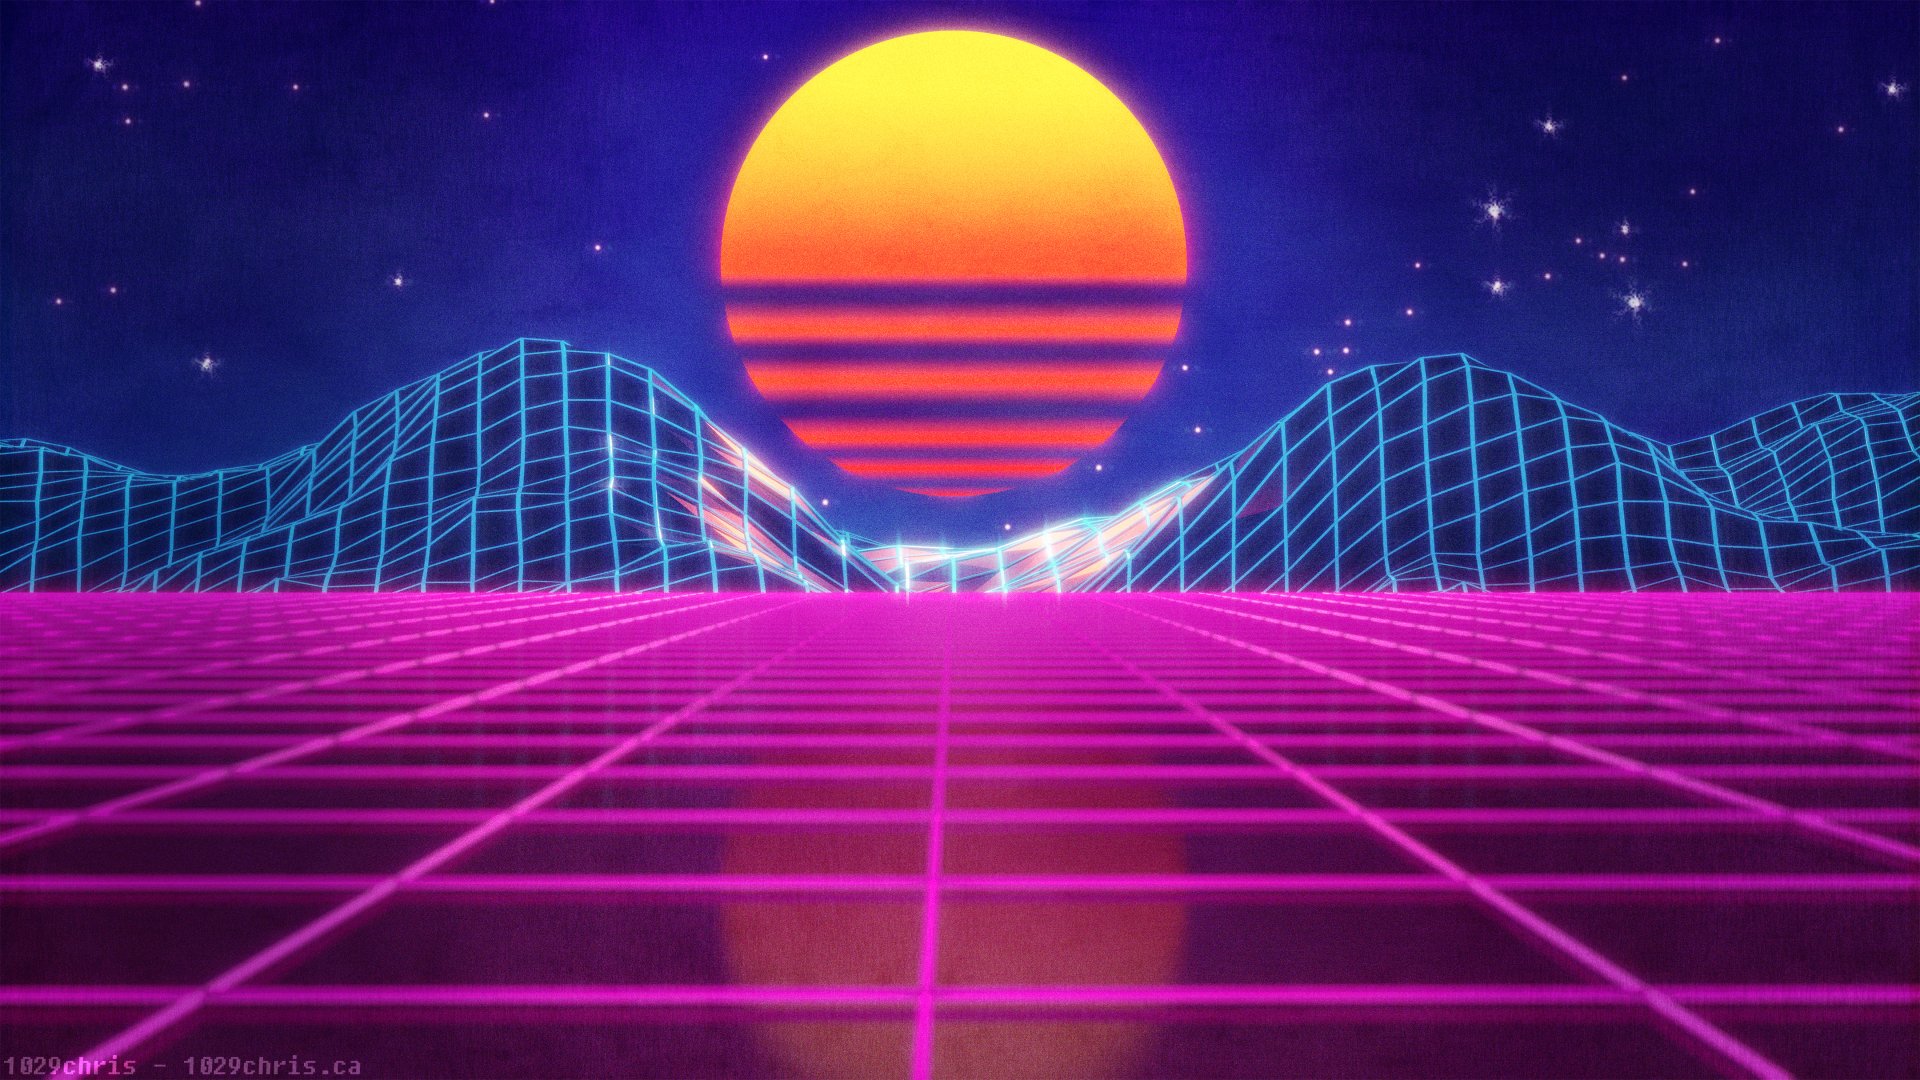 Hình nền Retro Wave: Những gam màu tươi sáng, cùng với các hình ảnh đậm chất Retro Wave sẽ mang đến cho bạn không gian máy tính thú vị hơn bao giờ hết. Hãy tham khảo các lựa chọn hình nền Retro Wave độc đáo và sáng tạo nhất để tận hưởng không gian làm việc đầy cảm hứng.